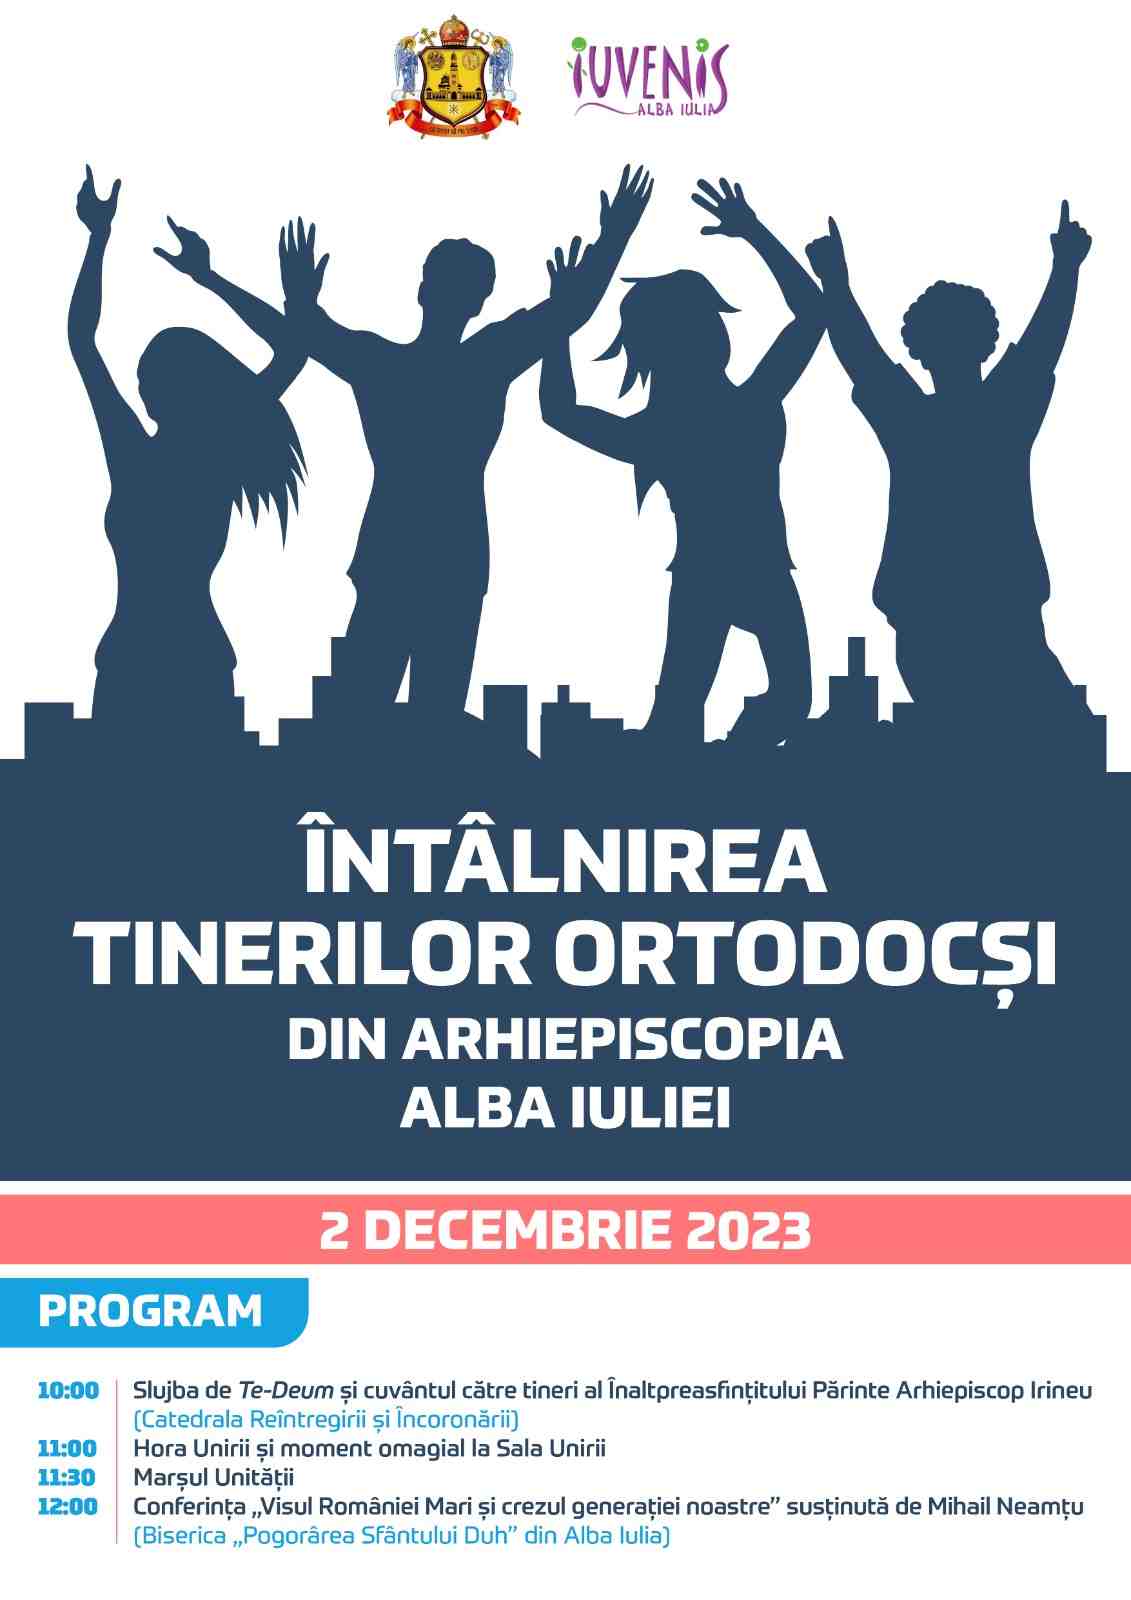 ITO Alba Iulia 2023  Întâlnirea tinerilor ortodocși din Arhiepiscopia Alba Iuliei ITO Alba Iulia 2023 tineri ortodocsi albatv